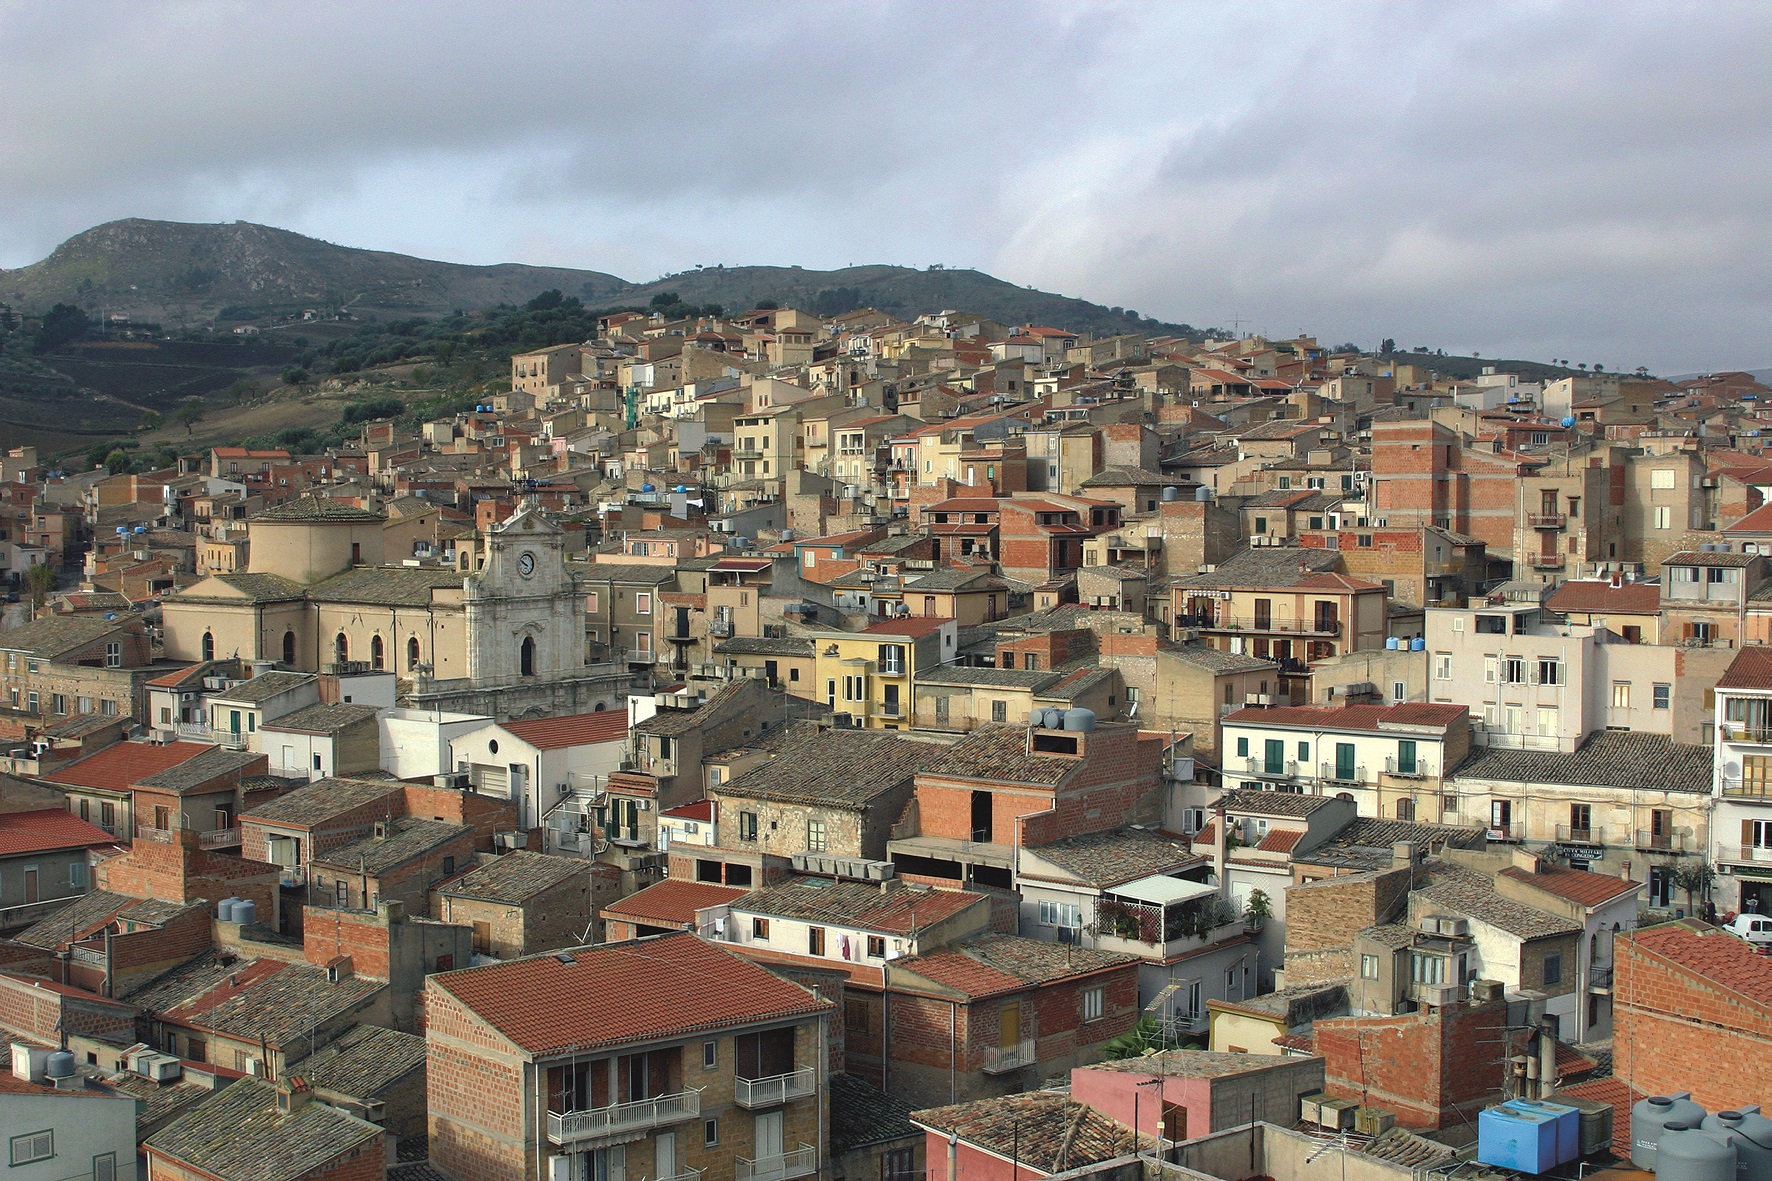 Emergenza Covid: a Santa Caterina il sindaco dispone la chiusura delle ville comunali